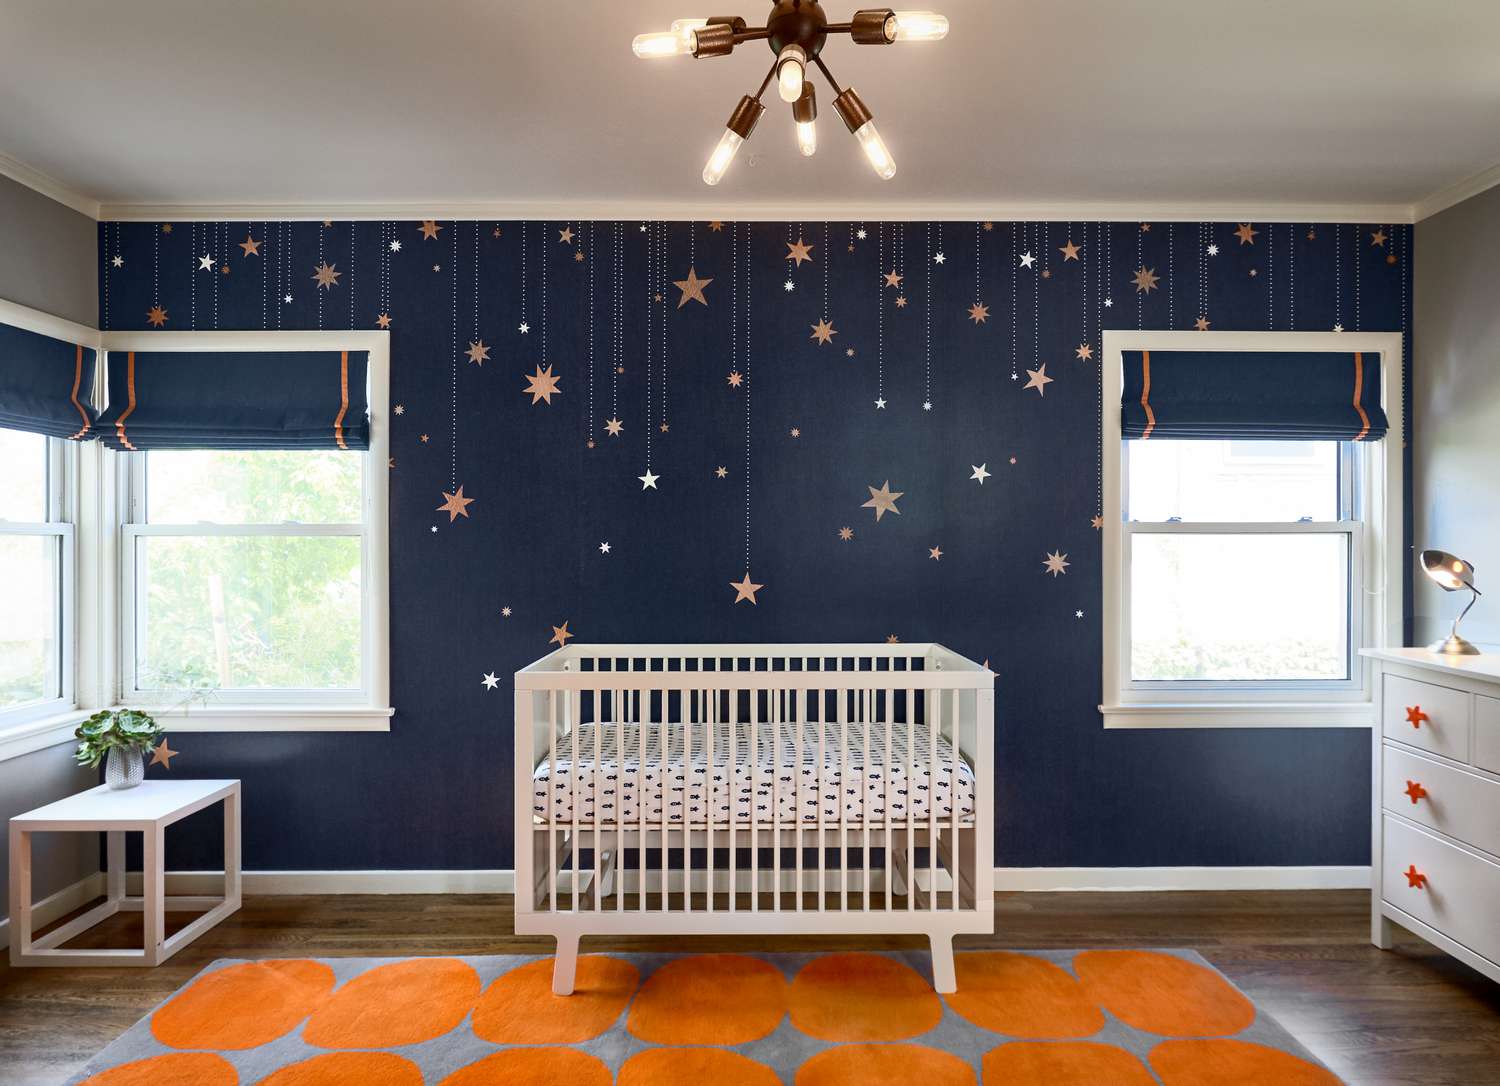 Une chambre d'enfant bleu marine, orange et gris avec des étoiles sur le mur